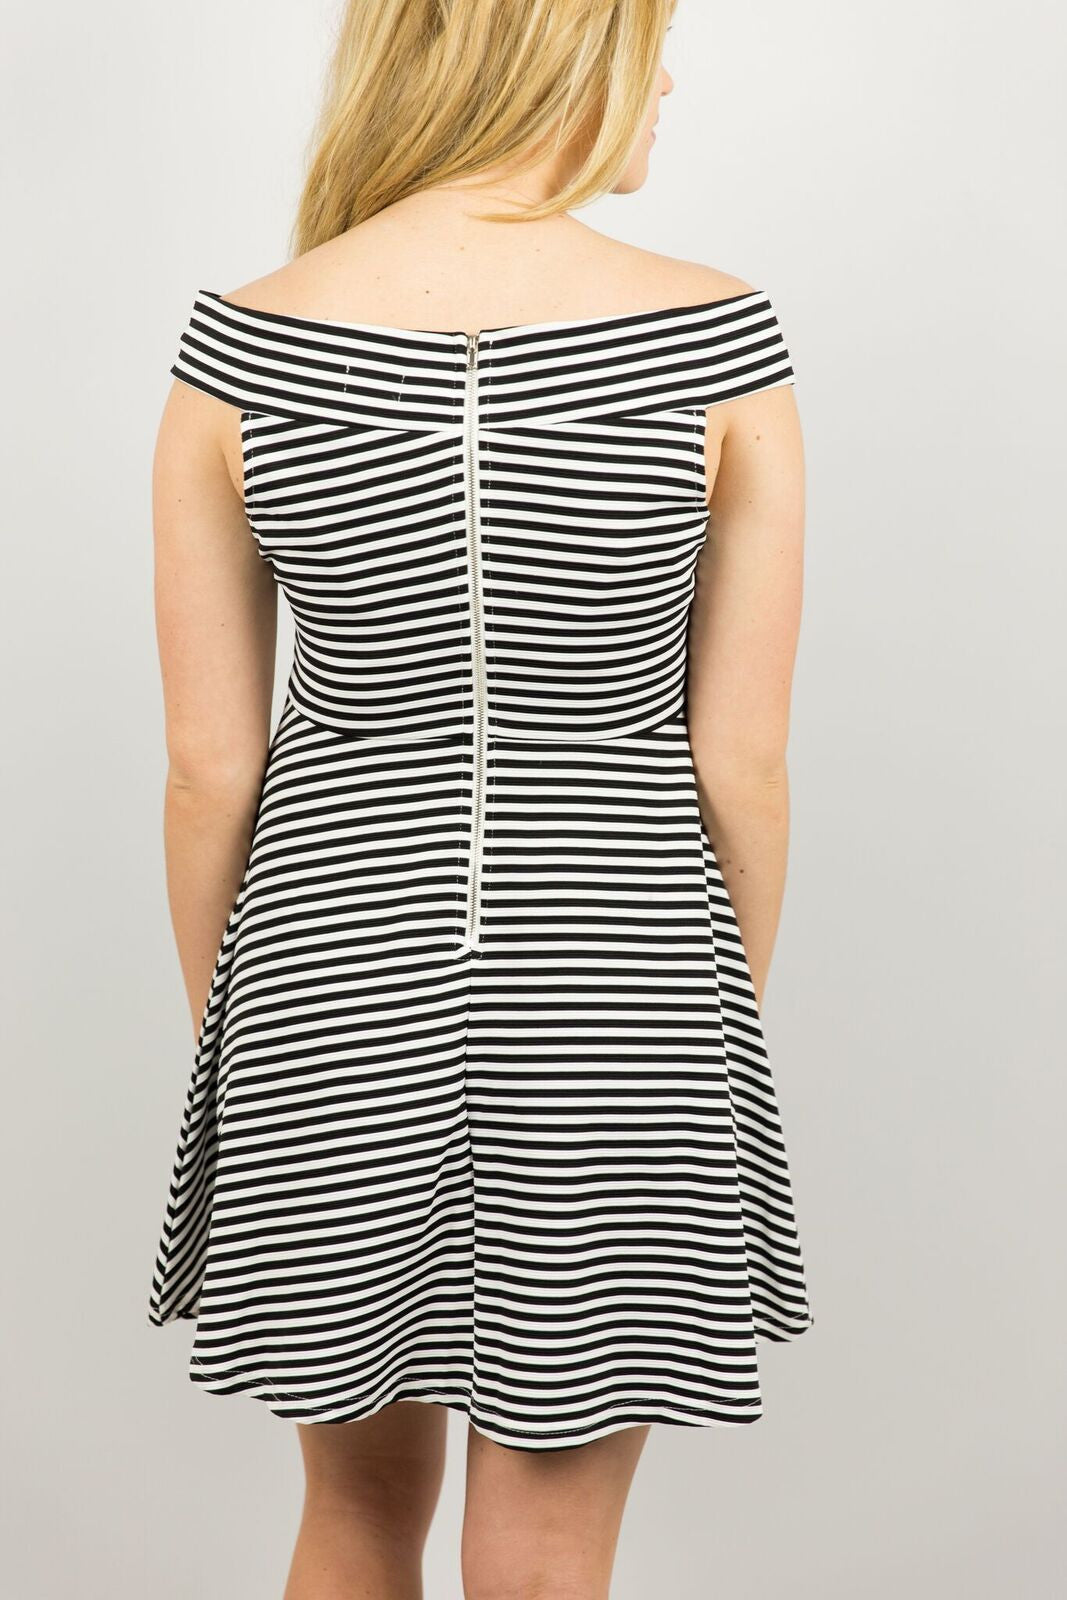 Elysian Off-the-Shoulder Striped Dress